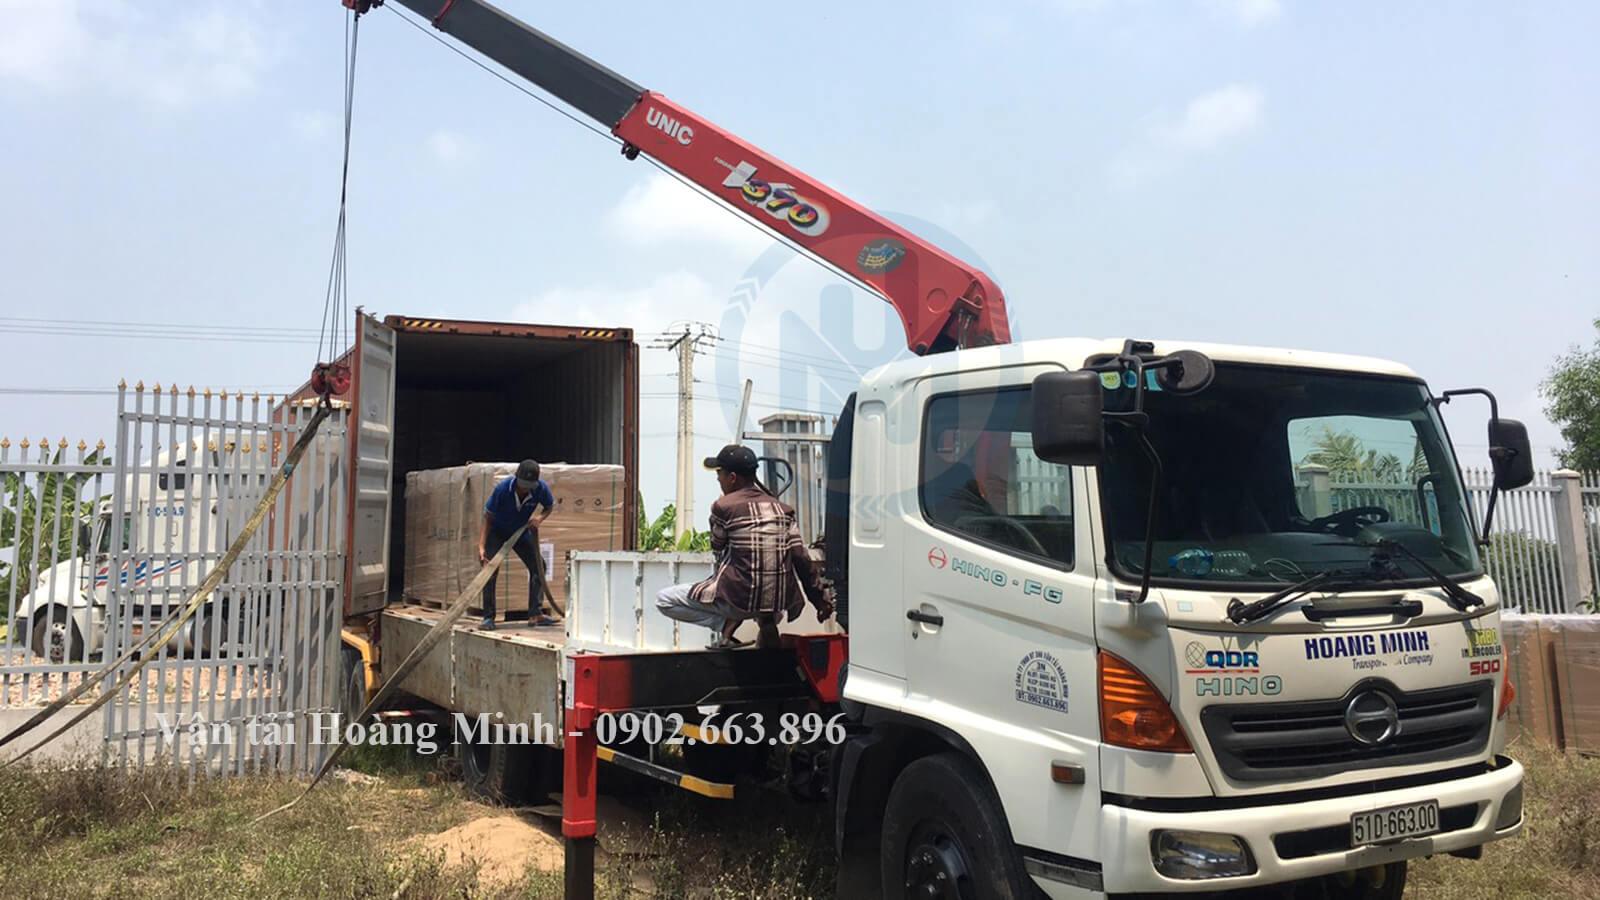 Hình ảnh xe cẩu Hoàng Minh cẩu hàng cho khách tại khu vực Thuận An.jpg